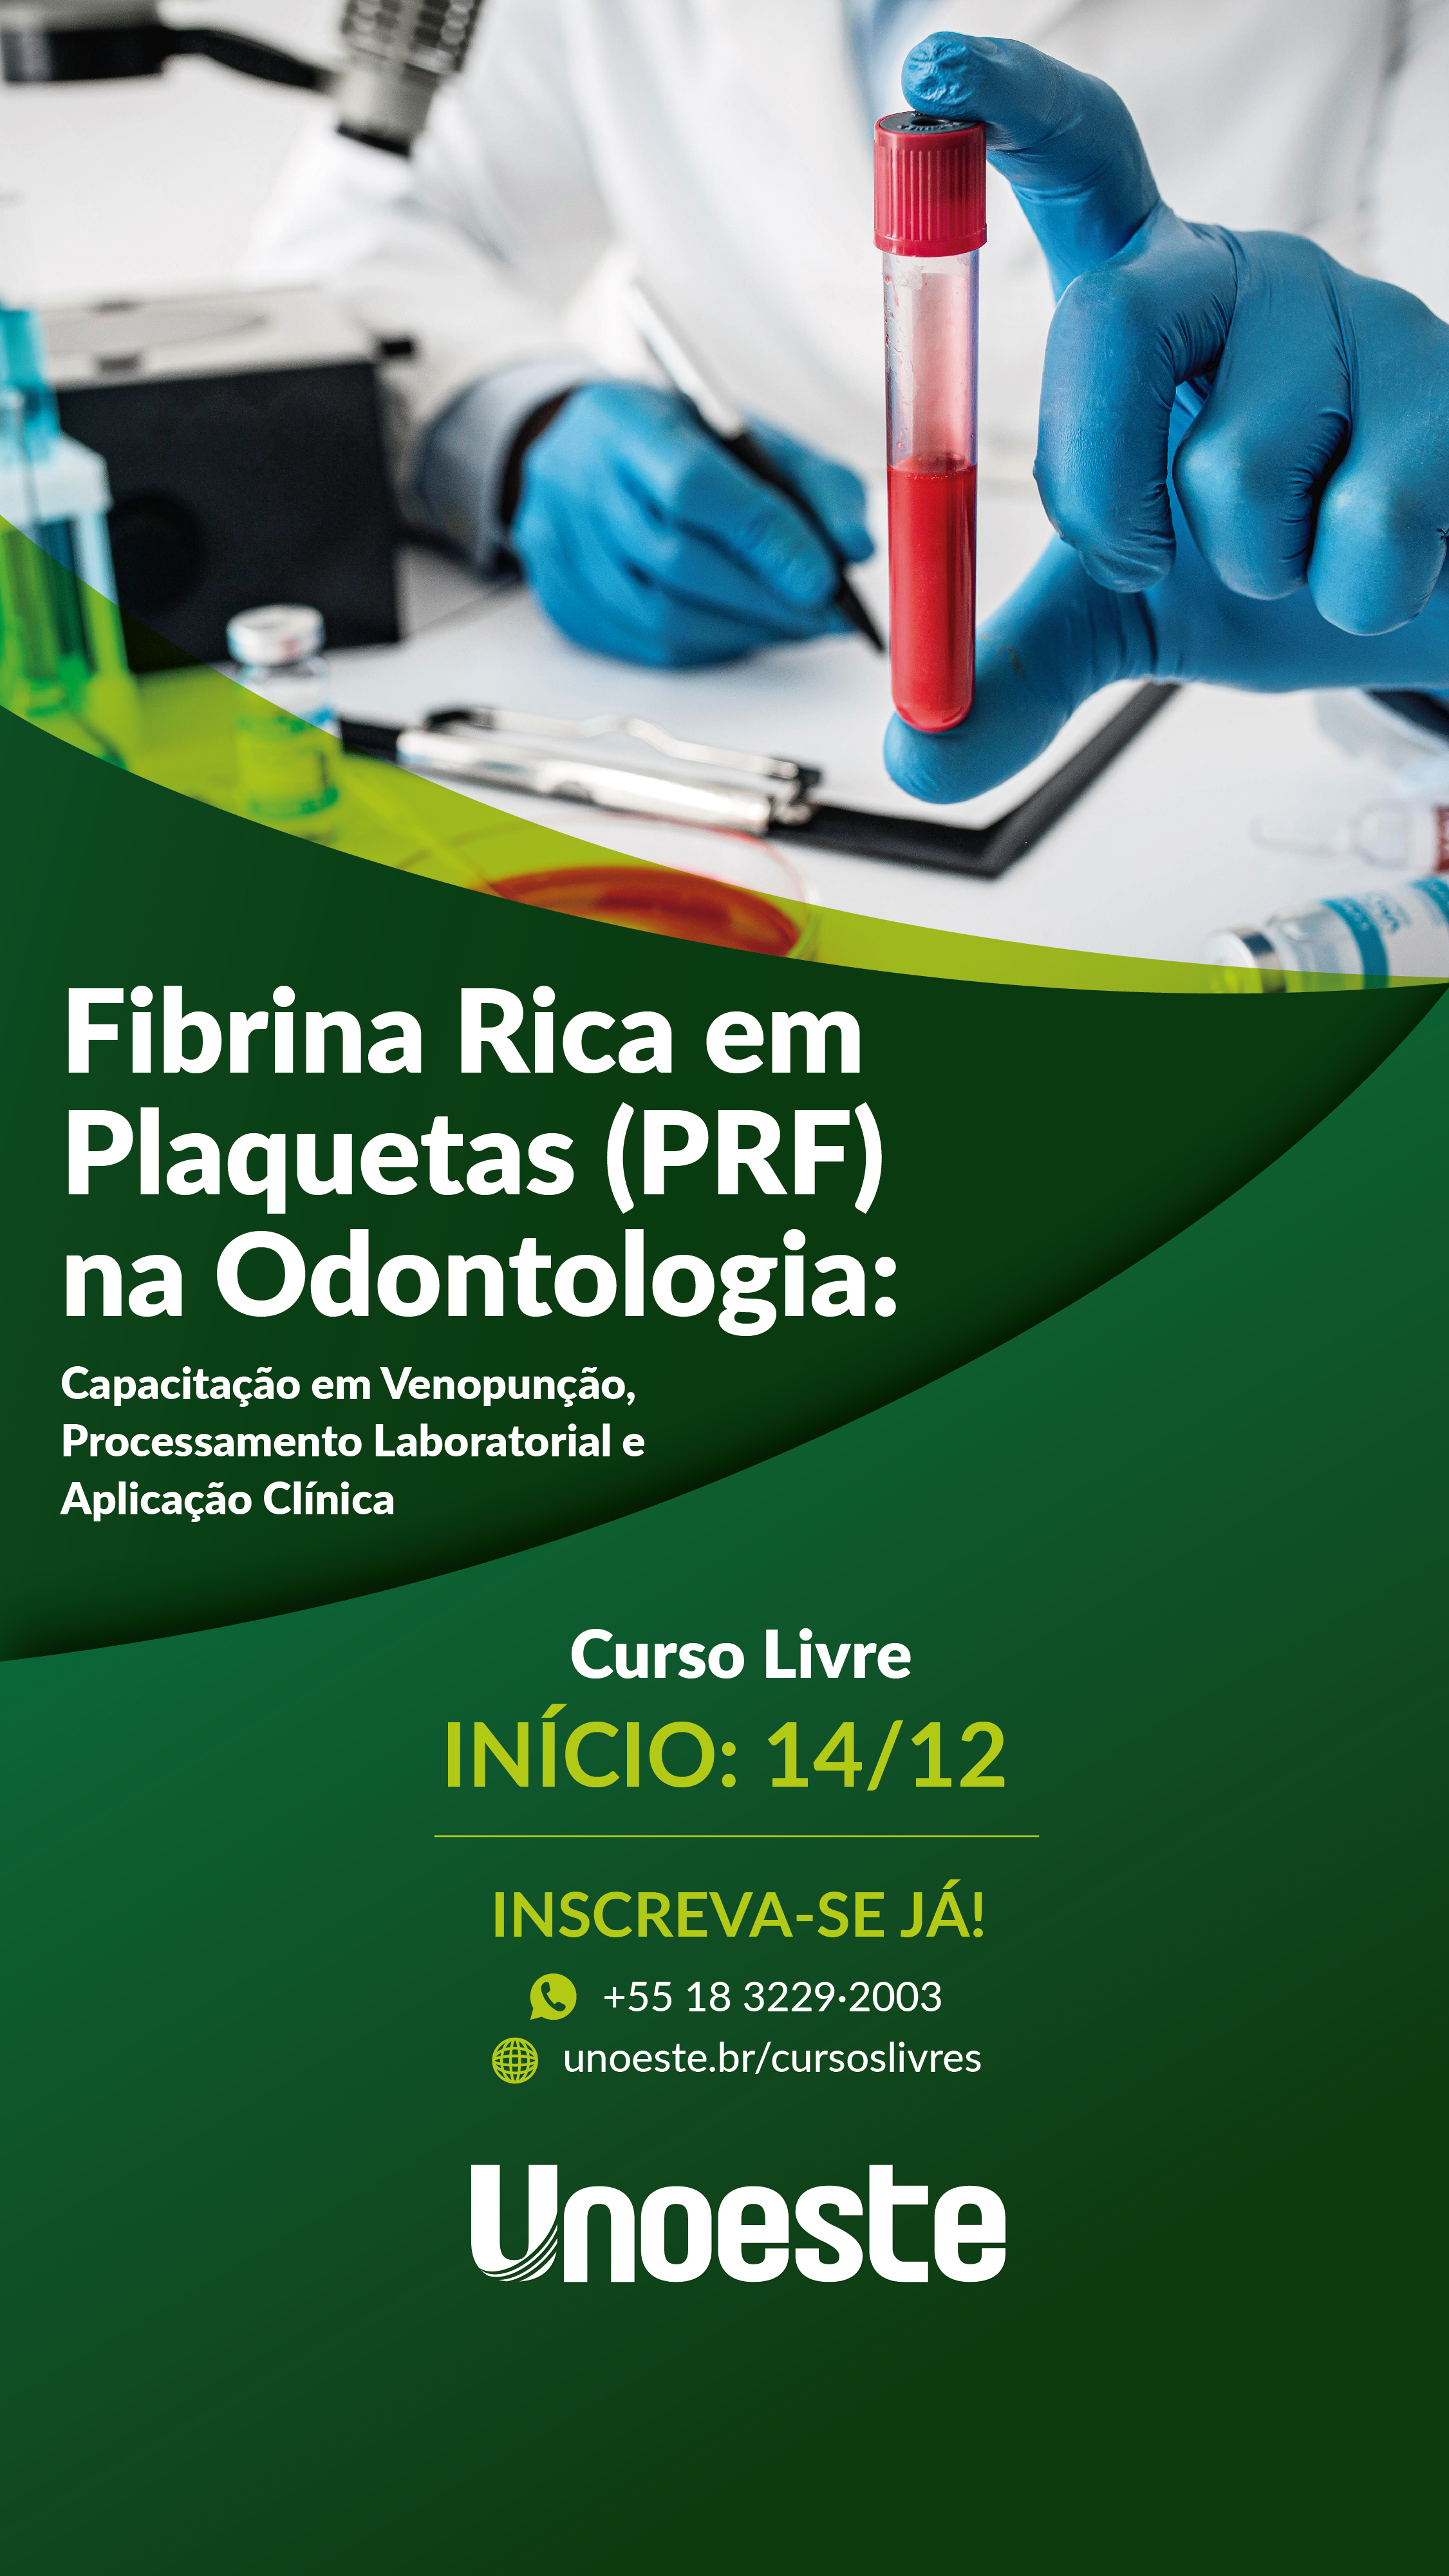 Fibrina Rica em Plaquetas (PRF) na Odontologia: Capacitação em Venopunção, Processamento Laboratorial e Aplicação Clínica                                                                                                                                      